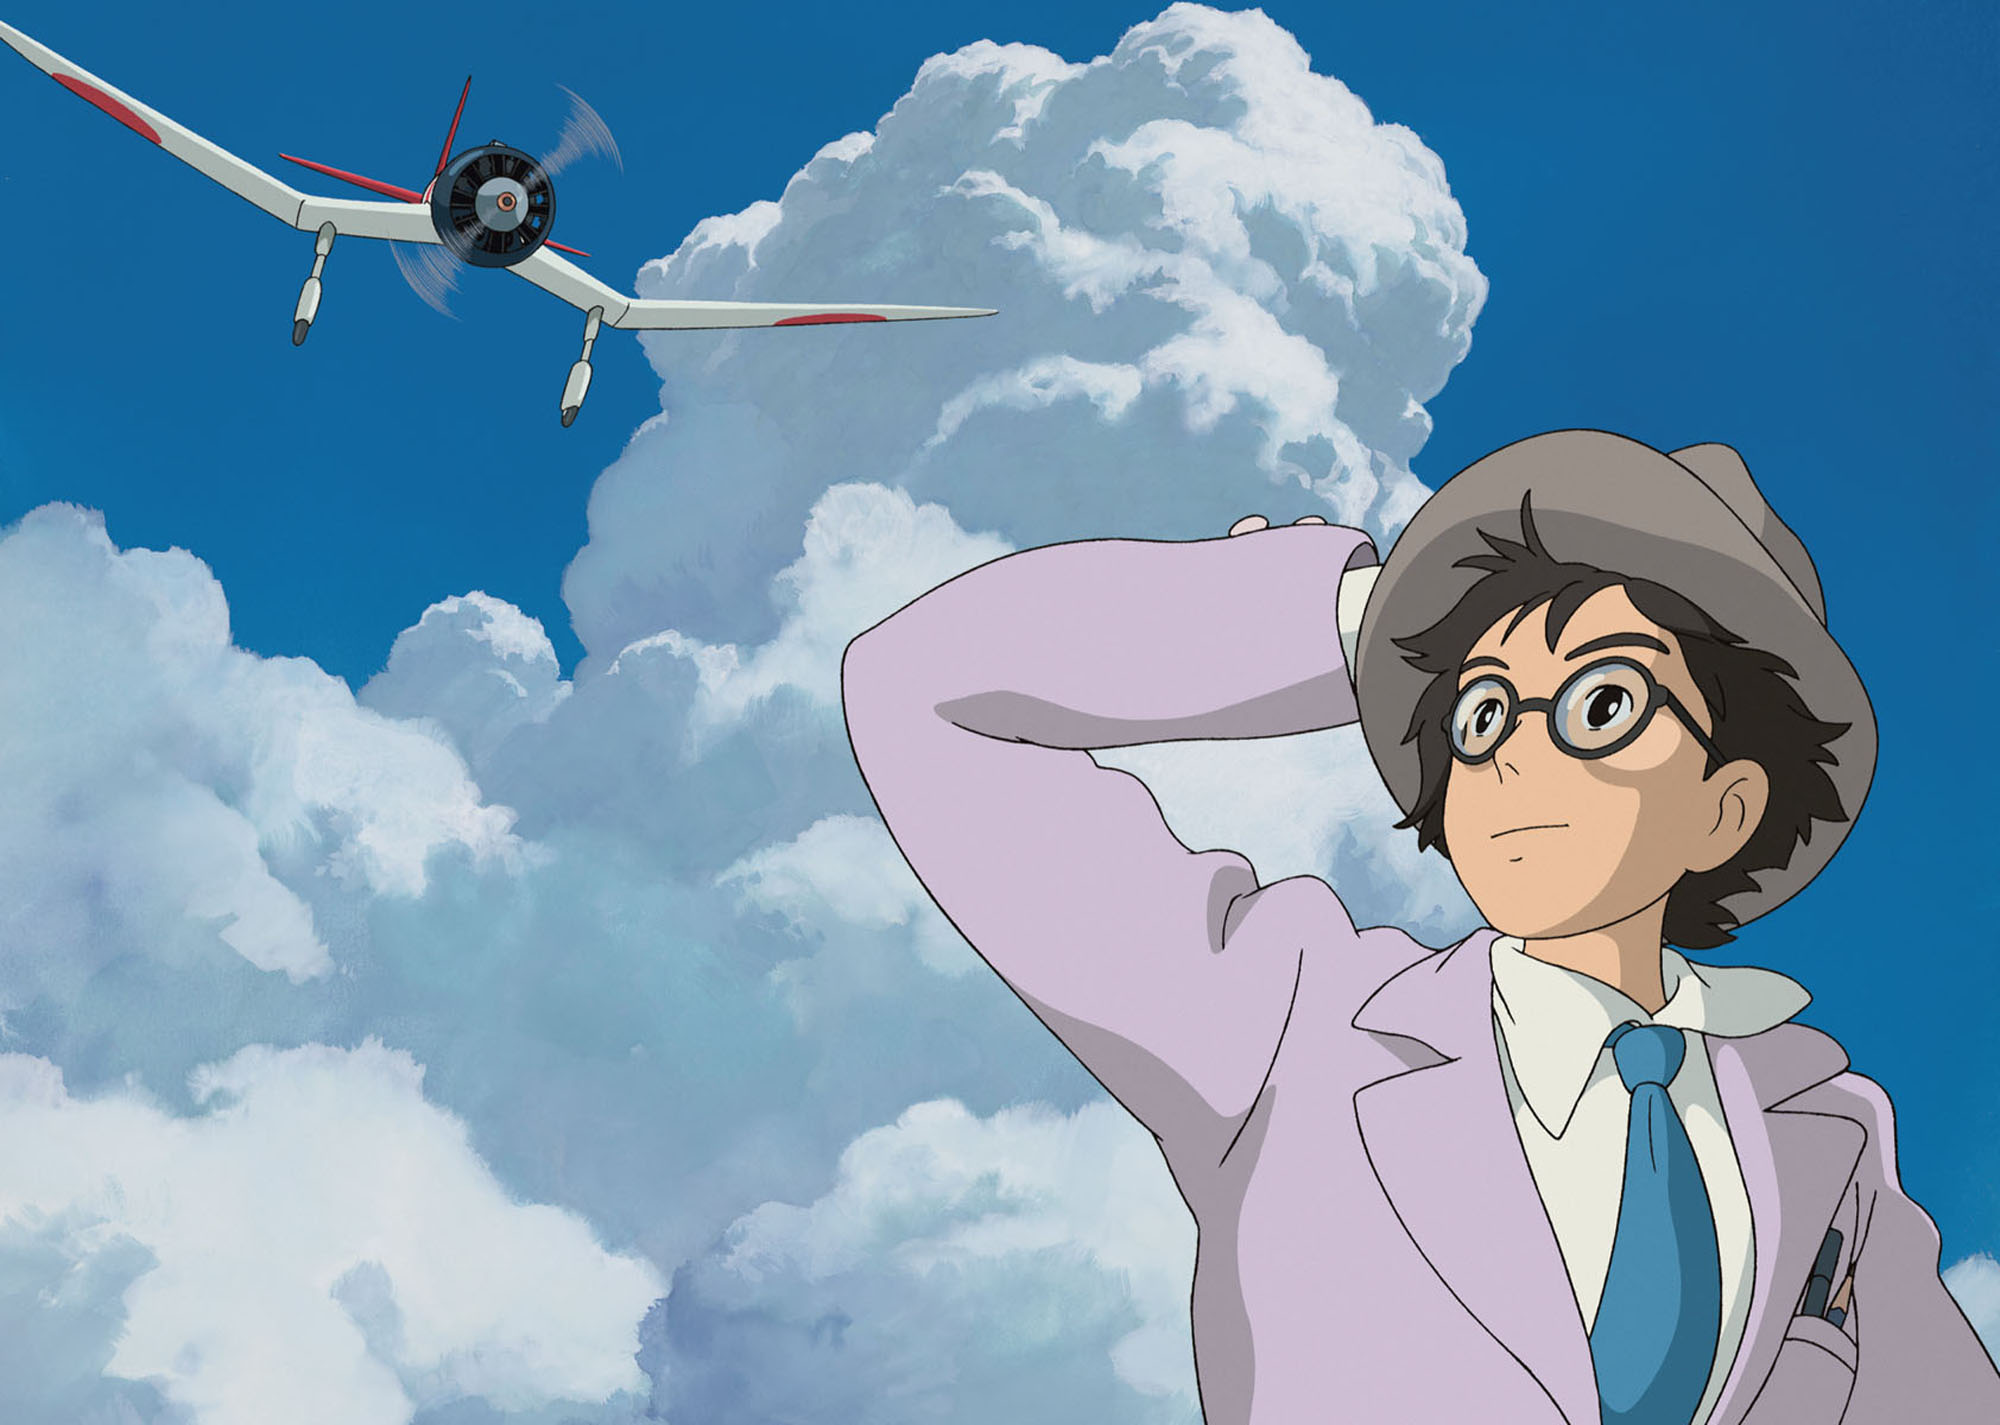 Miyazaki’s ‘The Wind Rises’ is an Enjoyable Flight of Fancy